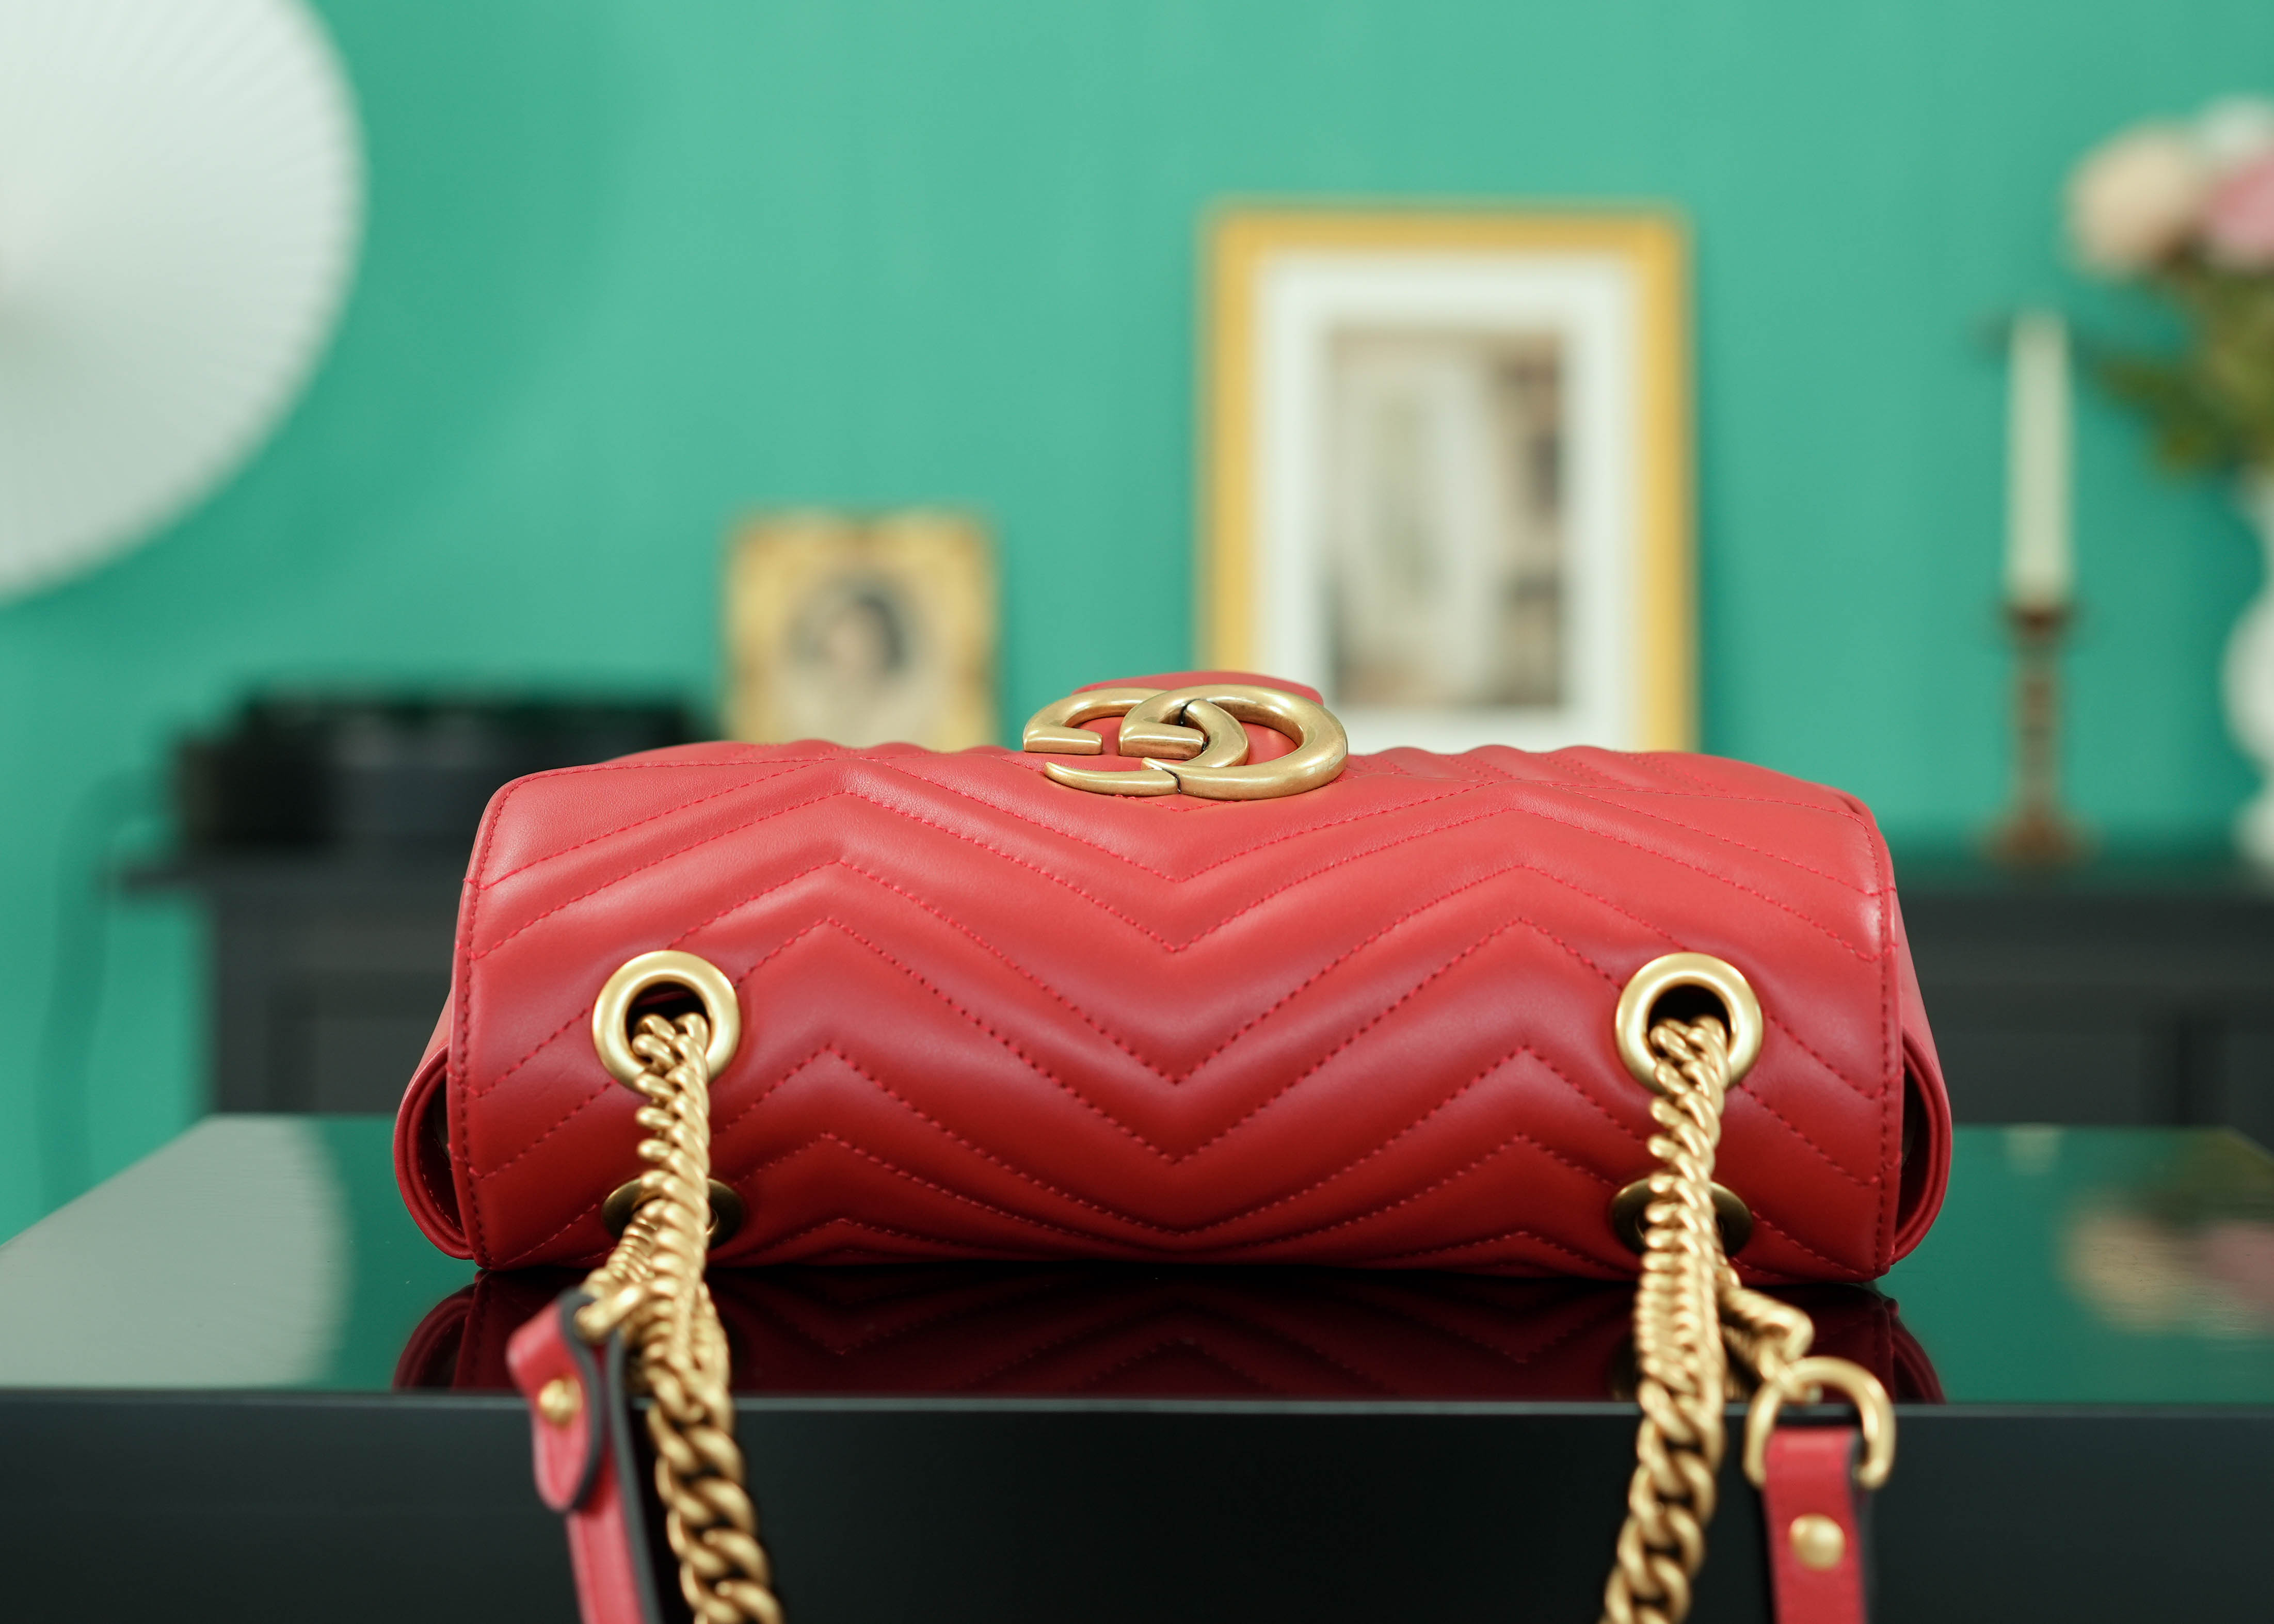 正品级Marmont系列肩背包经典款红色26cm原厂皮全铜五金正品售价129,500独家原厂皮发售限量级